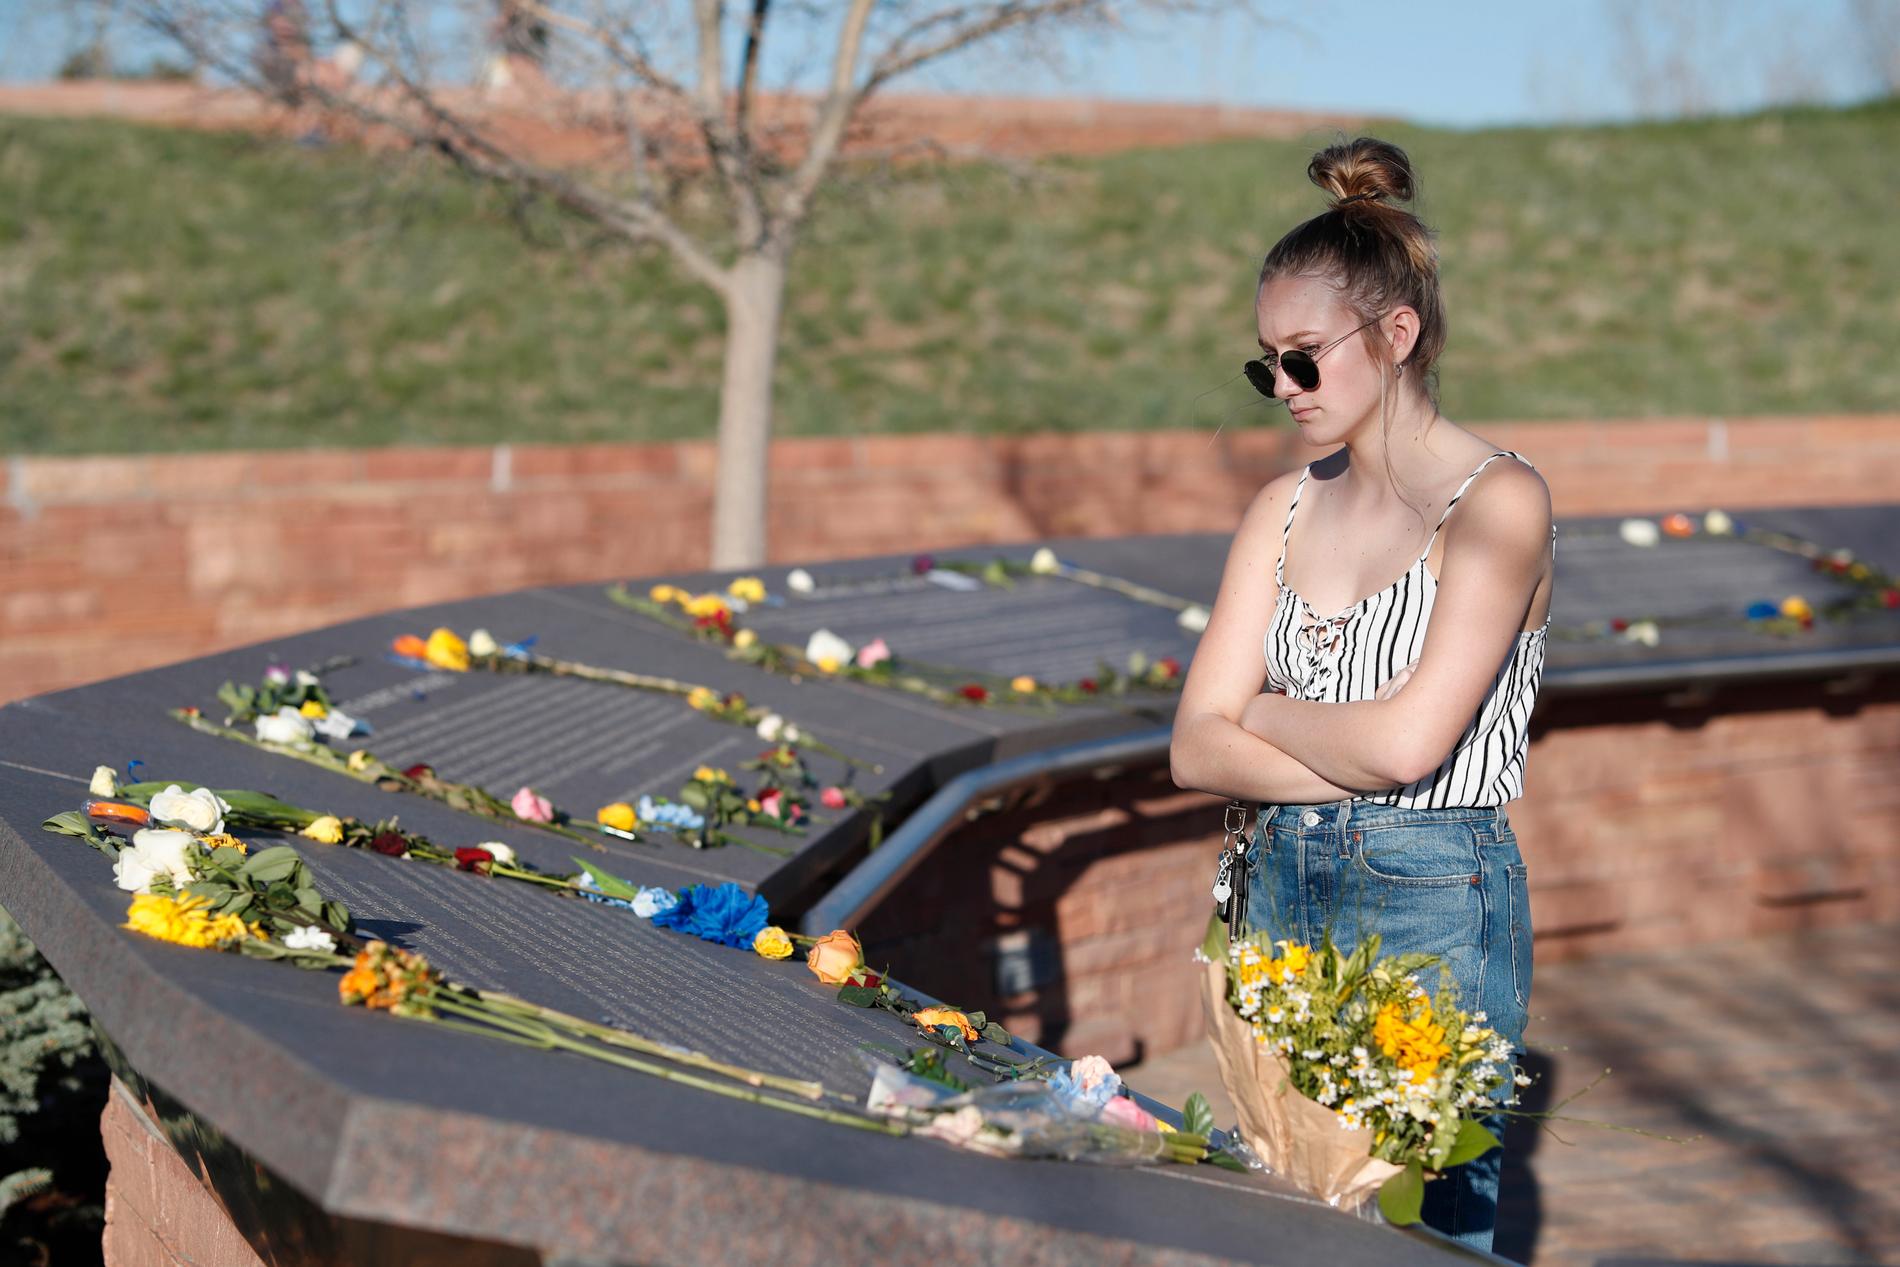 Sextonåriga Maren Strother var inte född när skotten föll i Columbine High School men har växt upp i en omgivning där skolskjutningar är en realitet. Hon tittar på minnesplaketterna över offren.